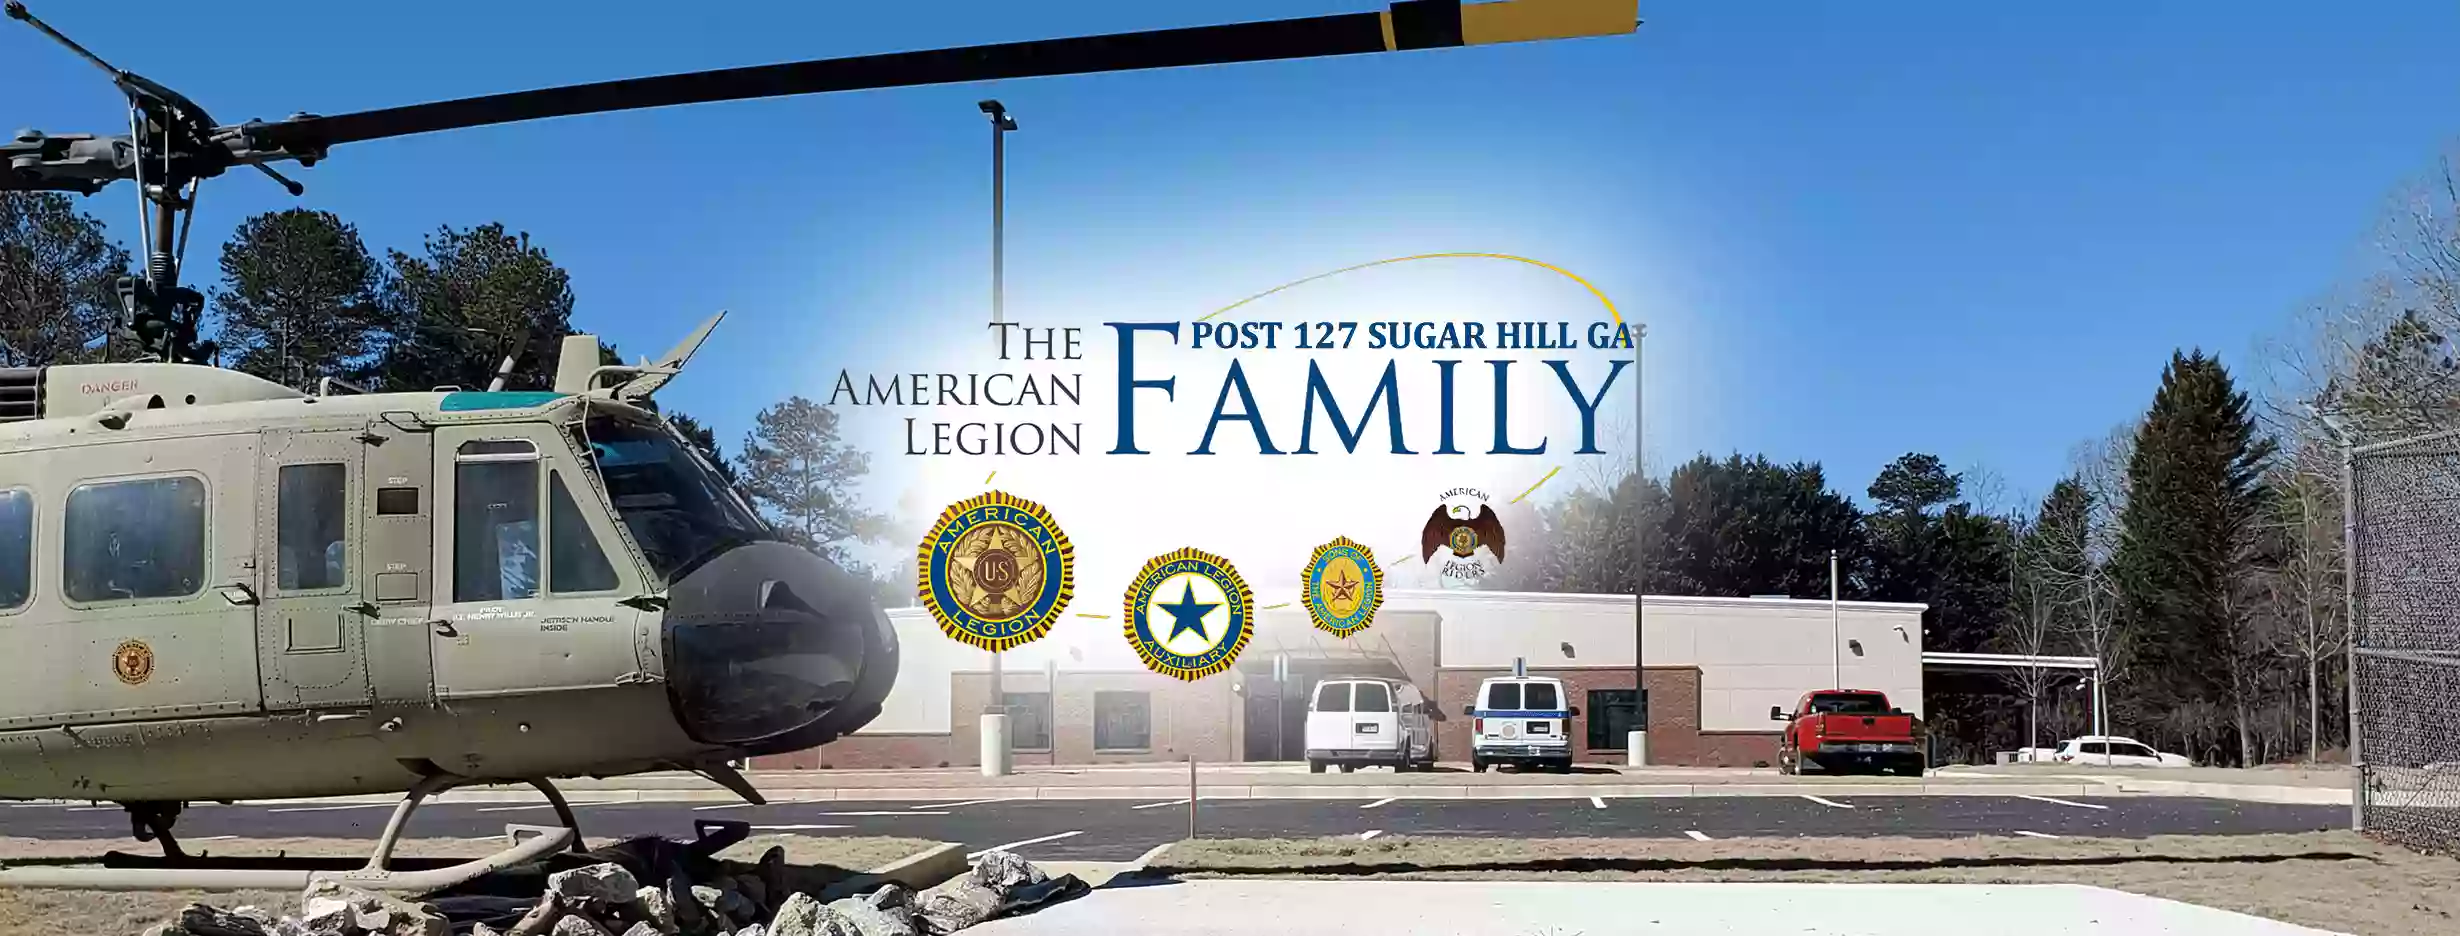 American Legion Post 127 - Sugar Hill